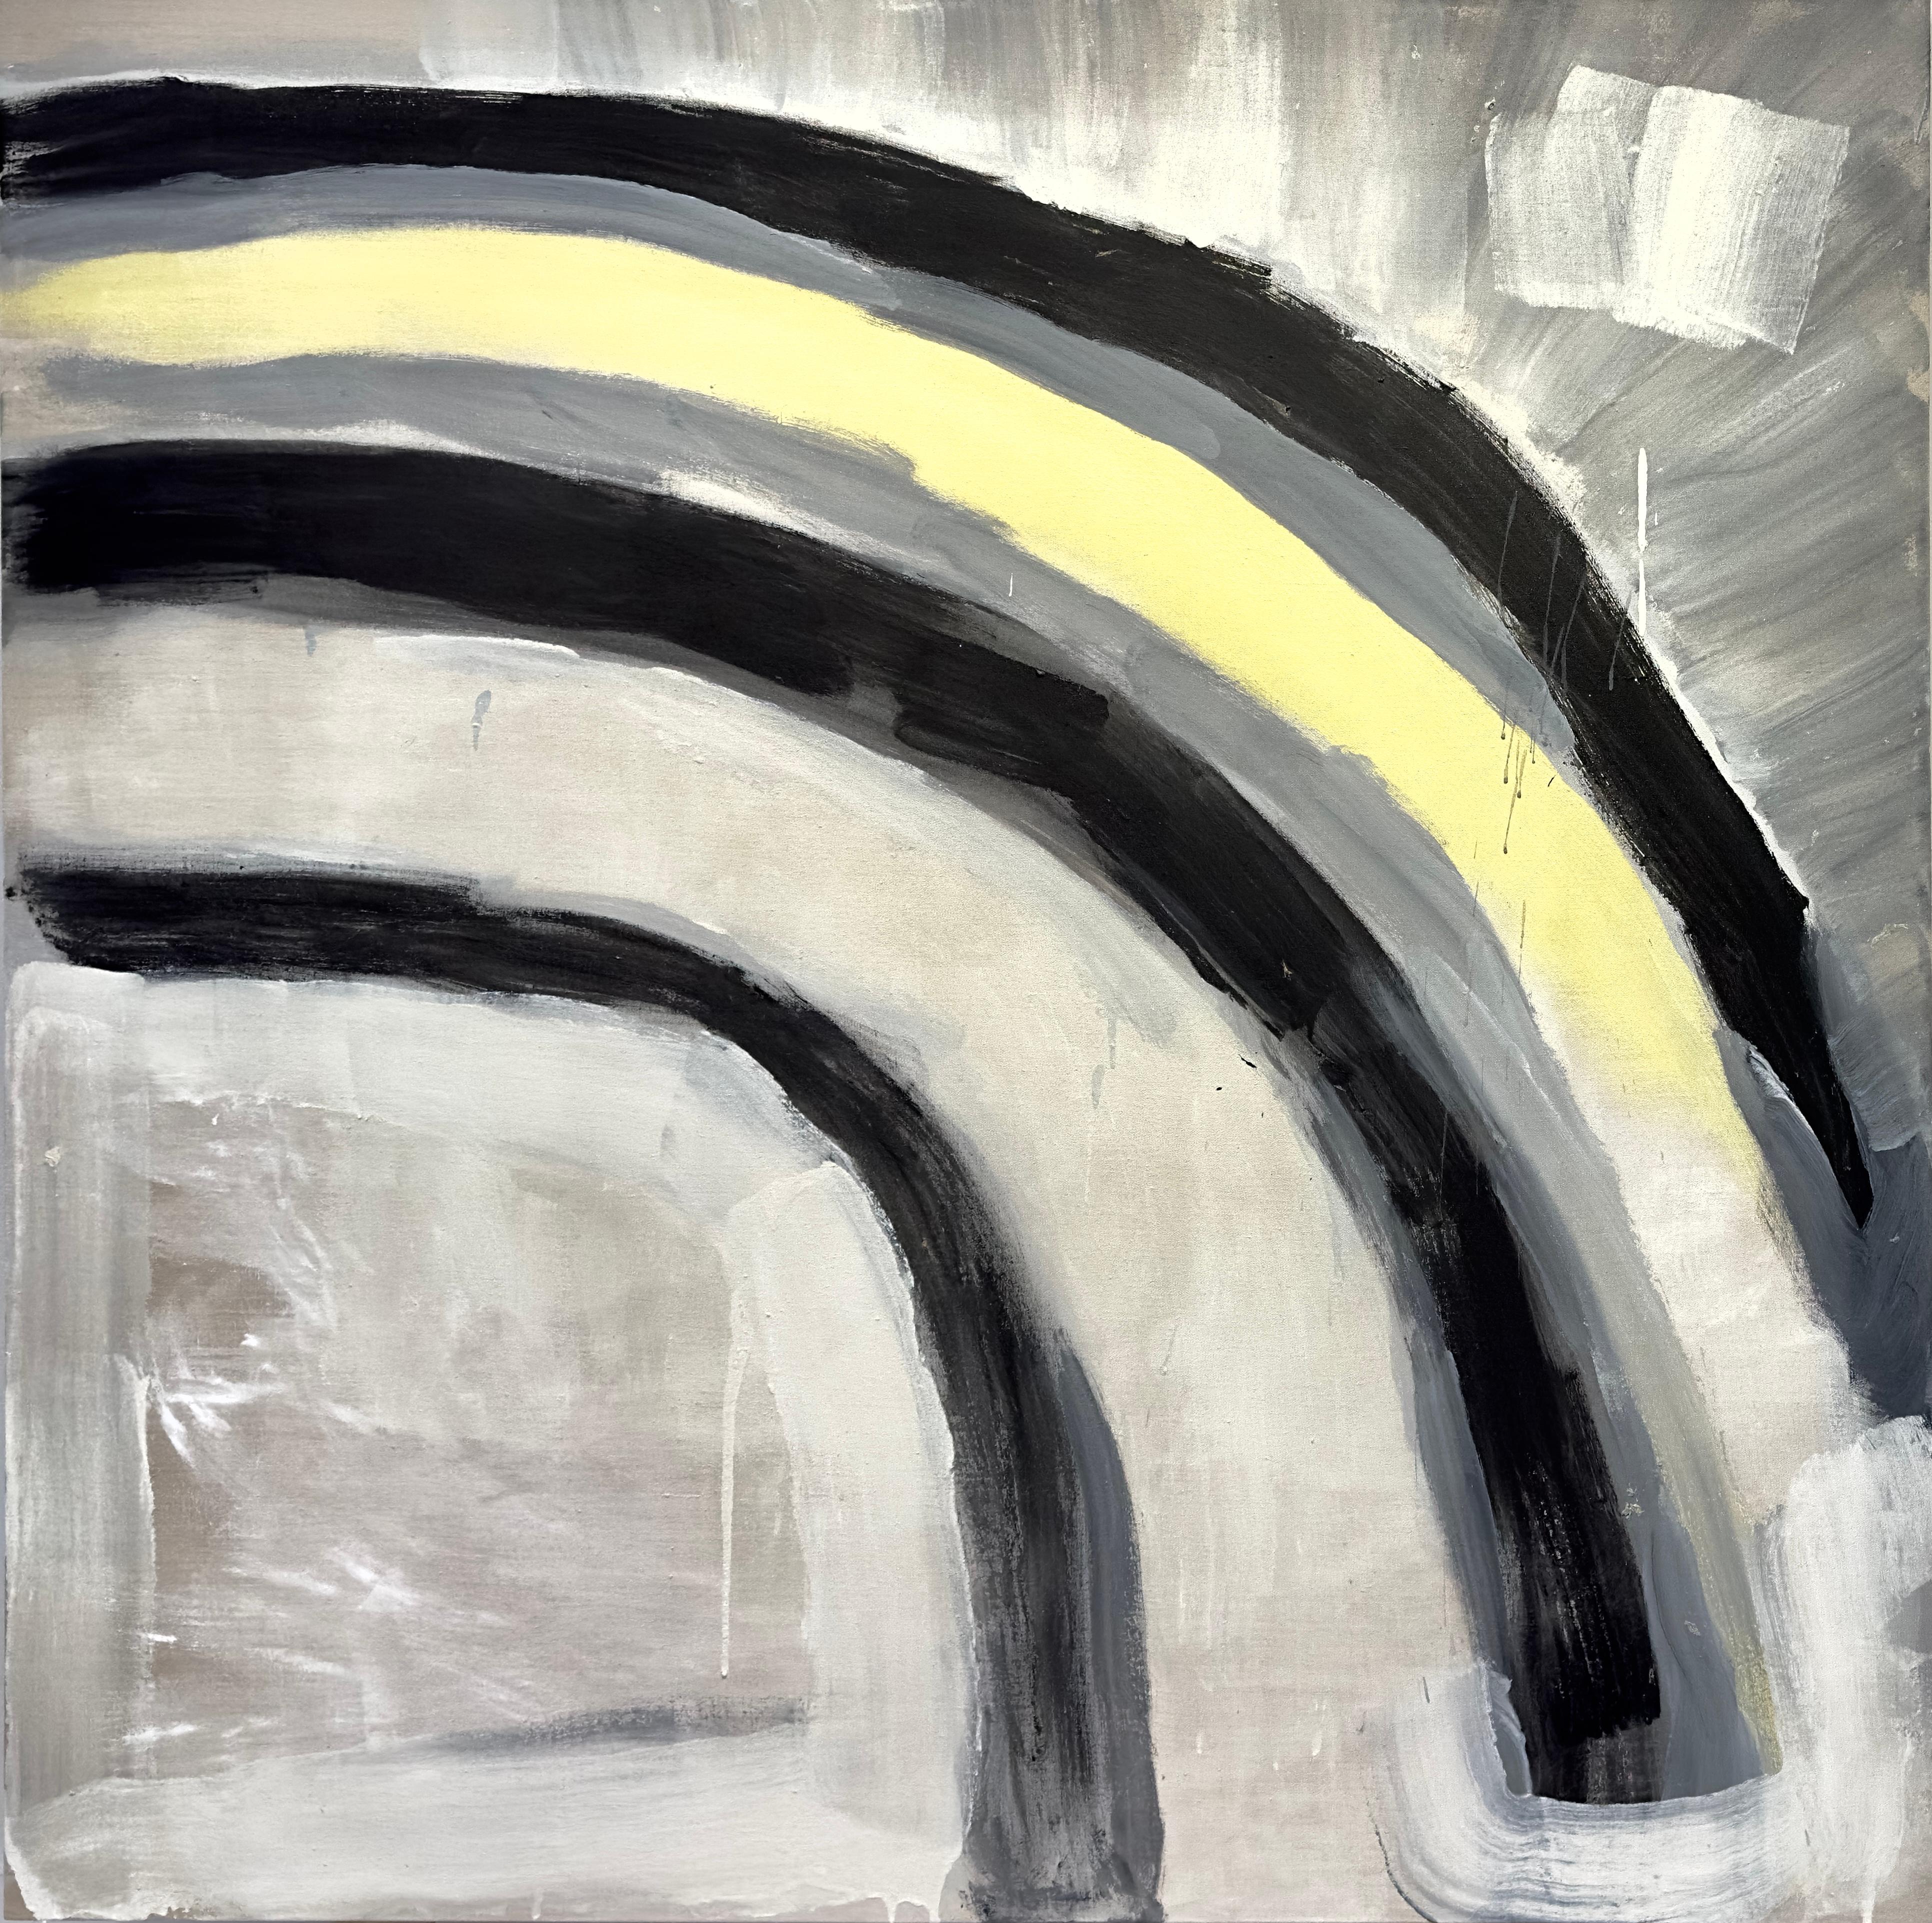 Abstract Painting Benji Stiles - "Half Rainbow" Peinture contemporaine au pastel, expressionnisme abstrait, techniques mixtes